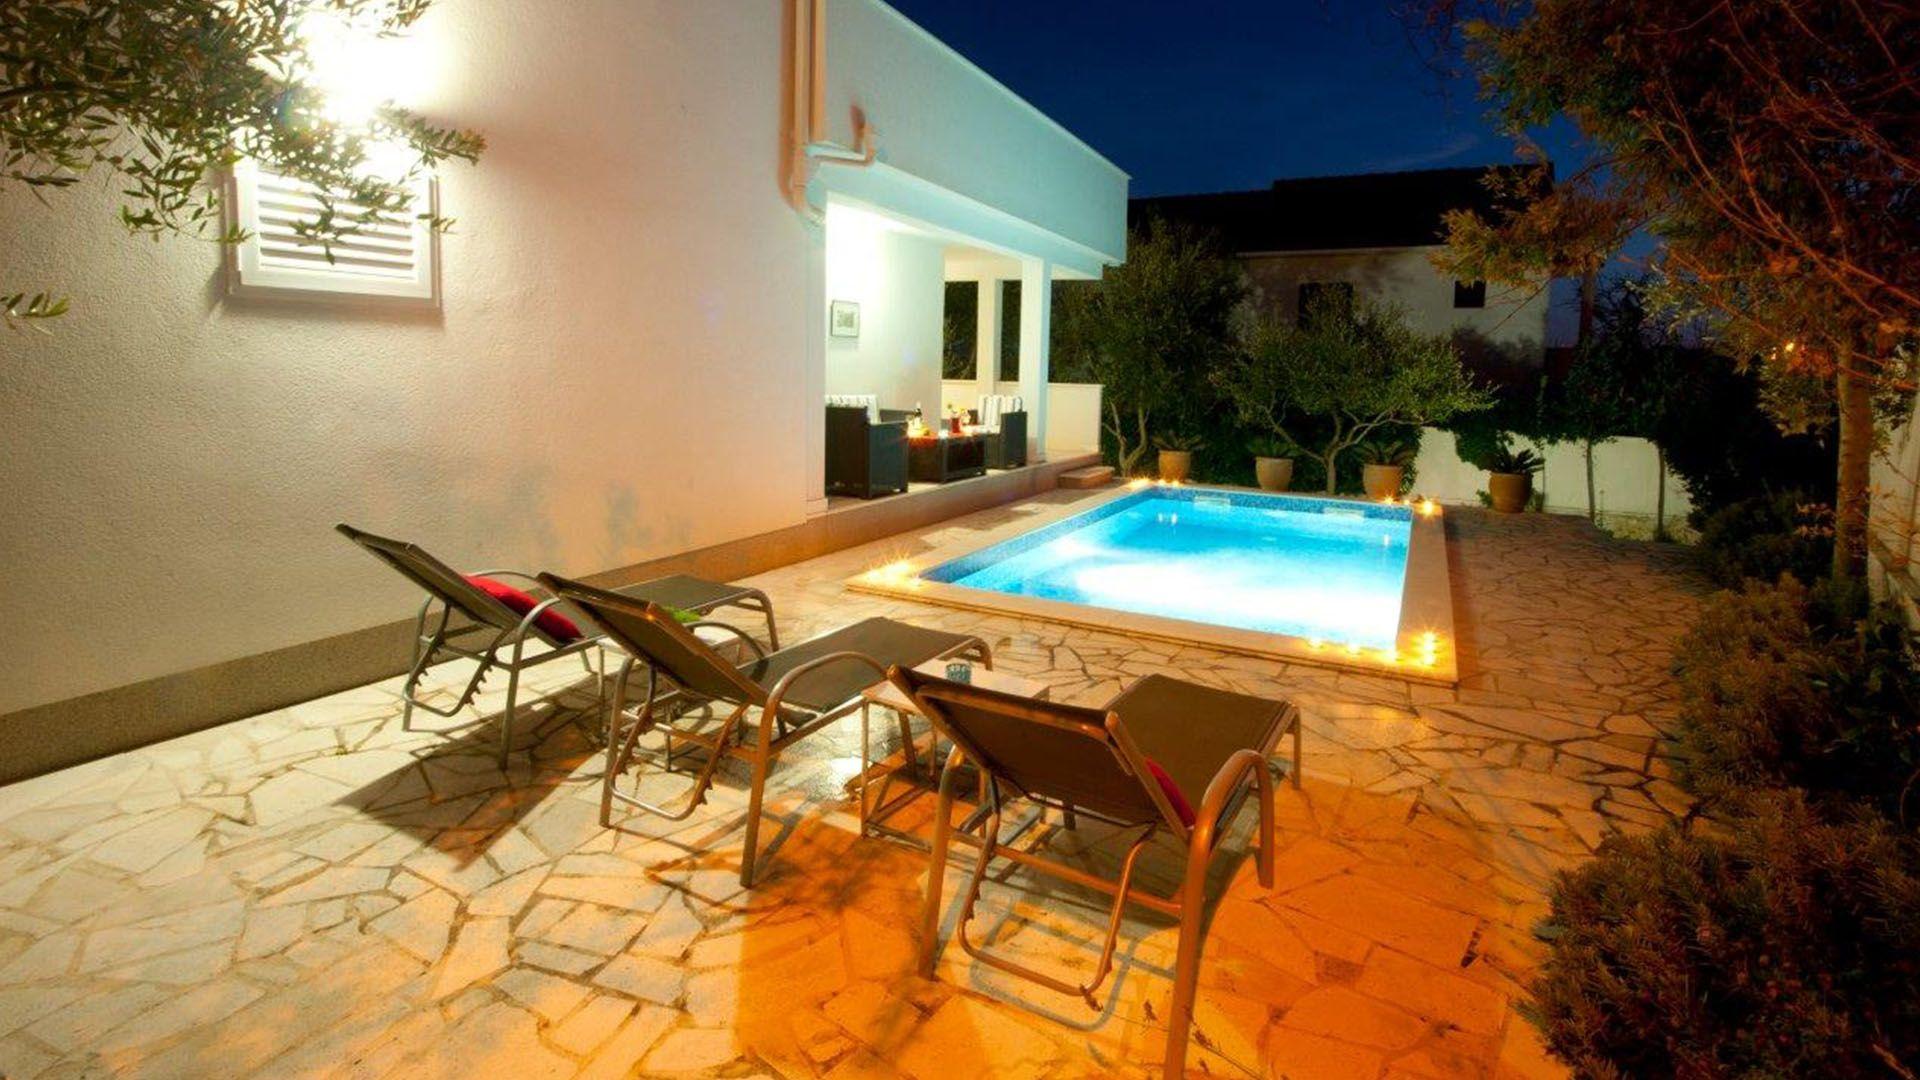 Ferienhaus mit Privatpool für 5 Personen  + 1  in Kroatien